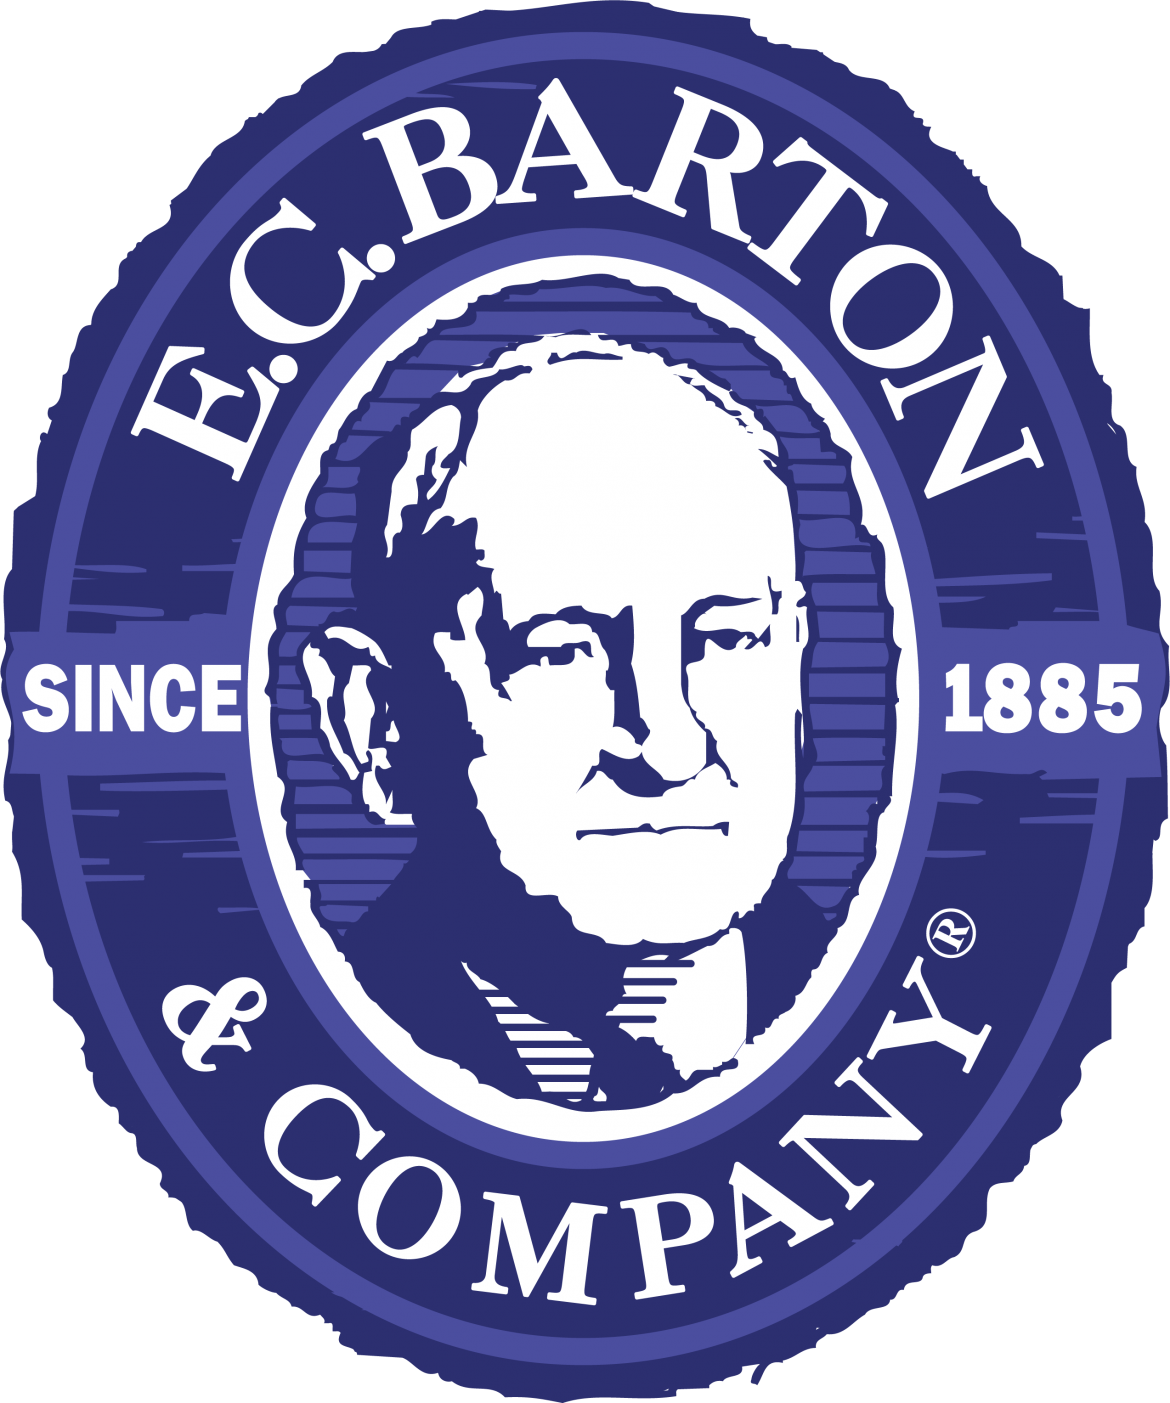 E.C. Barton & Company